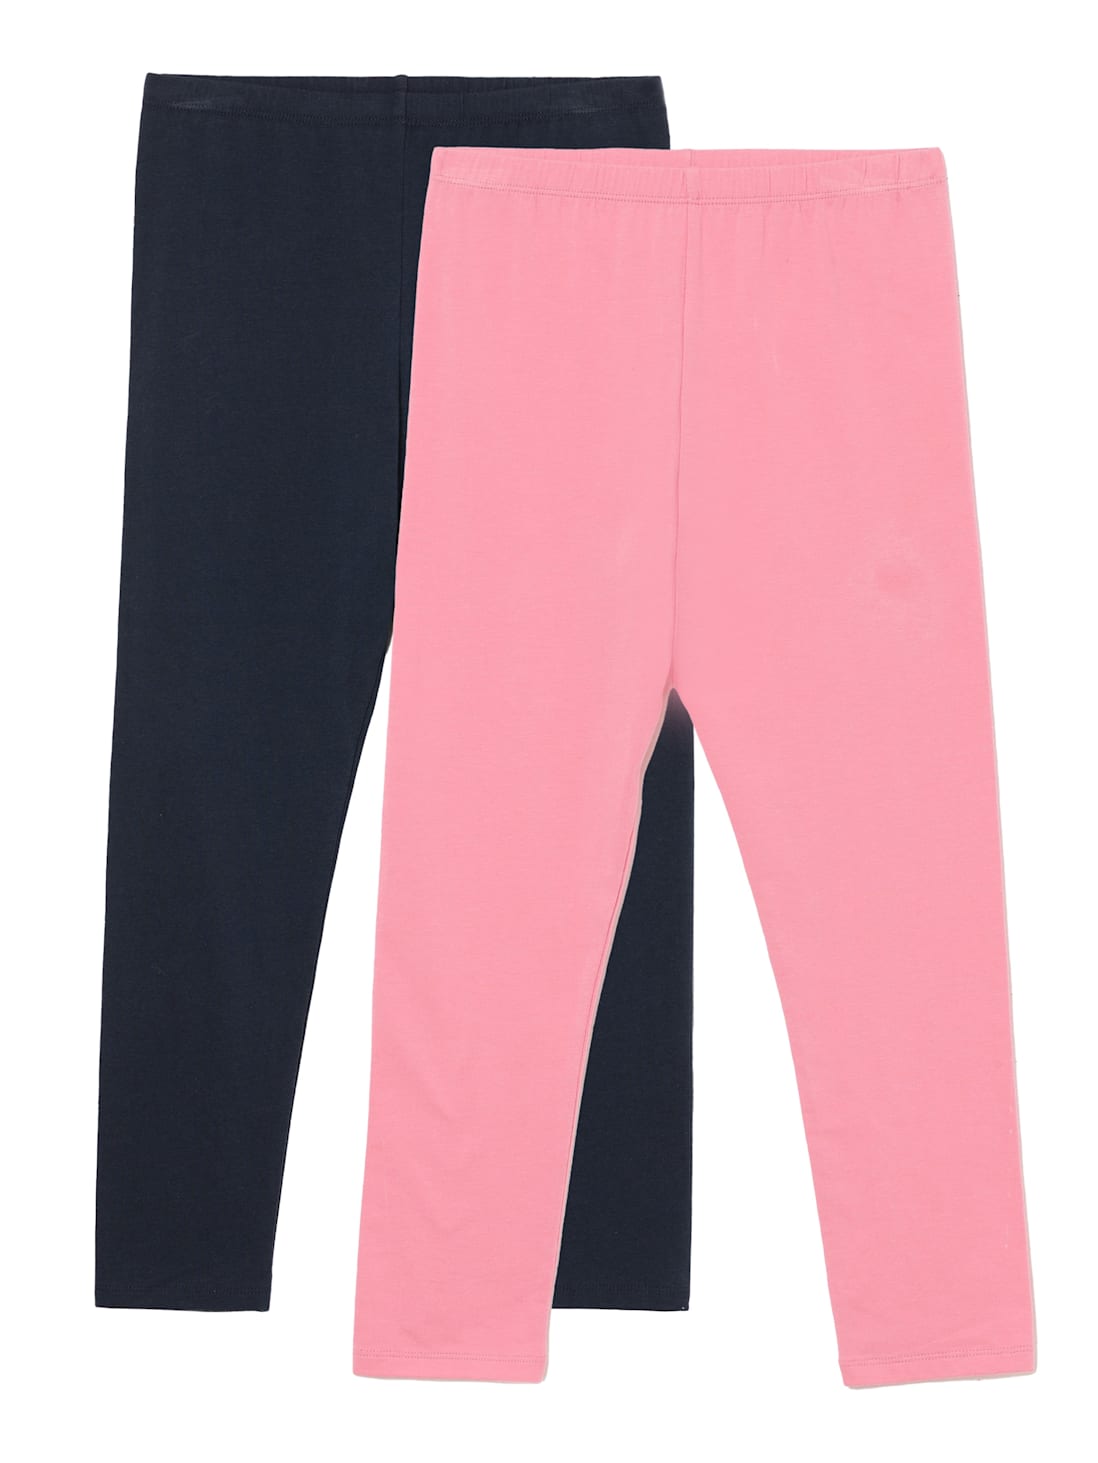 Hot Pink Ruffle Pants, Pink Leggings Girls Bottoms - Etsy